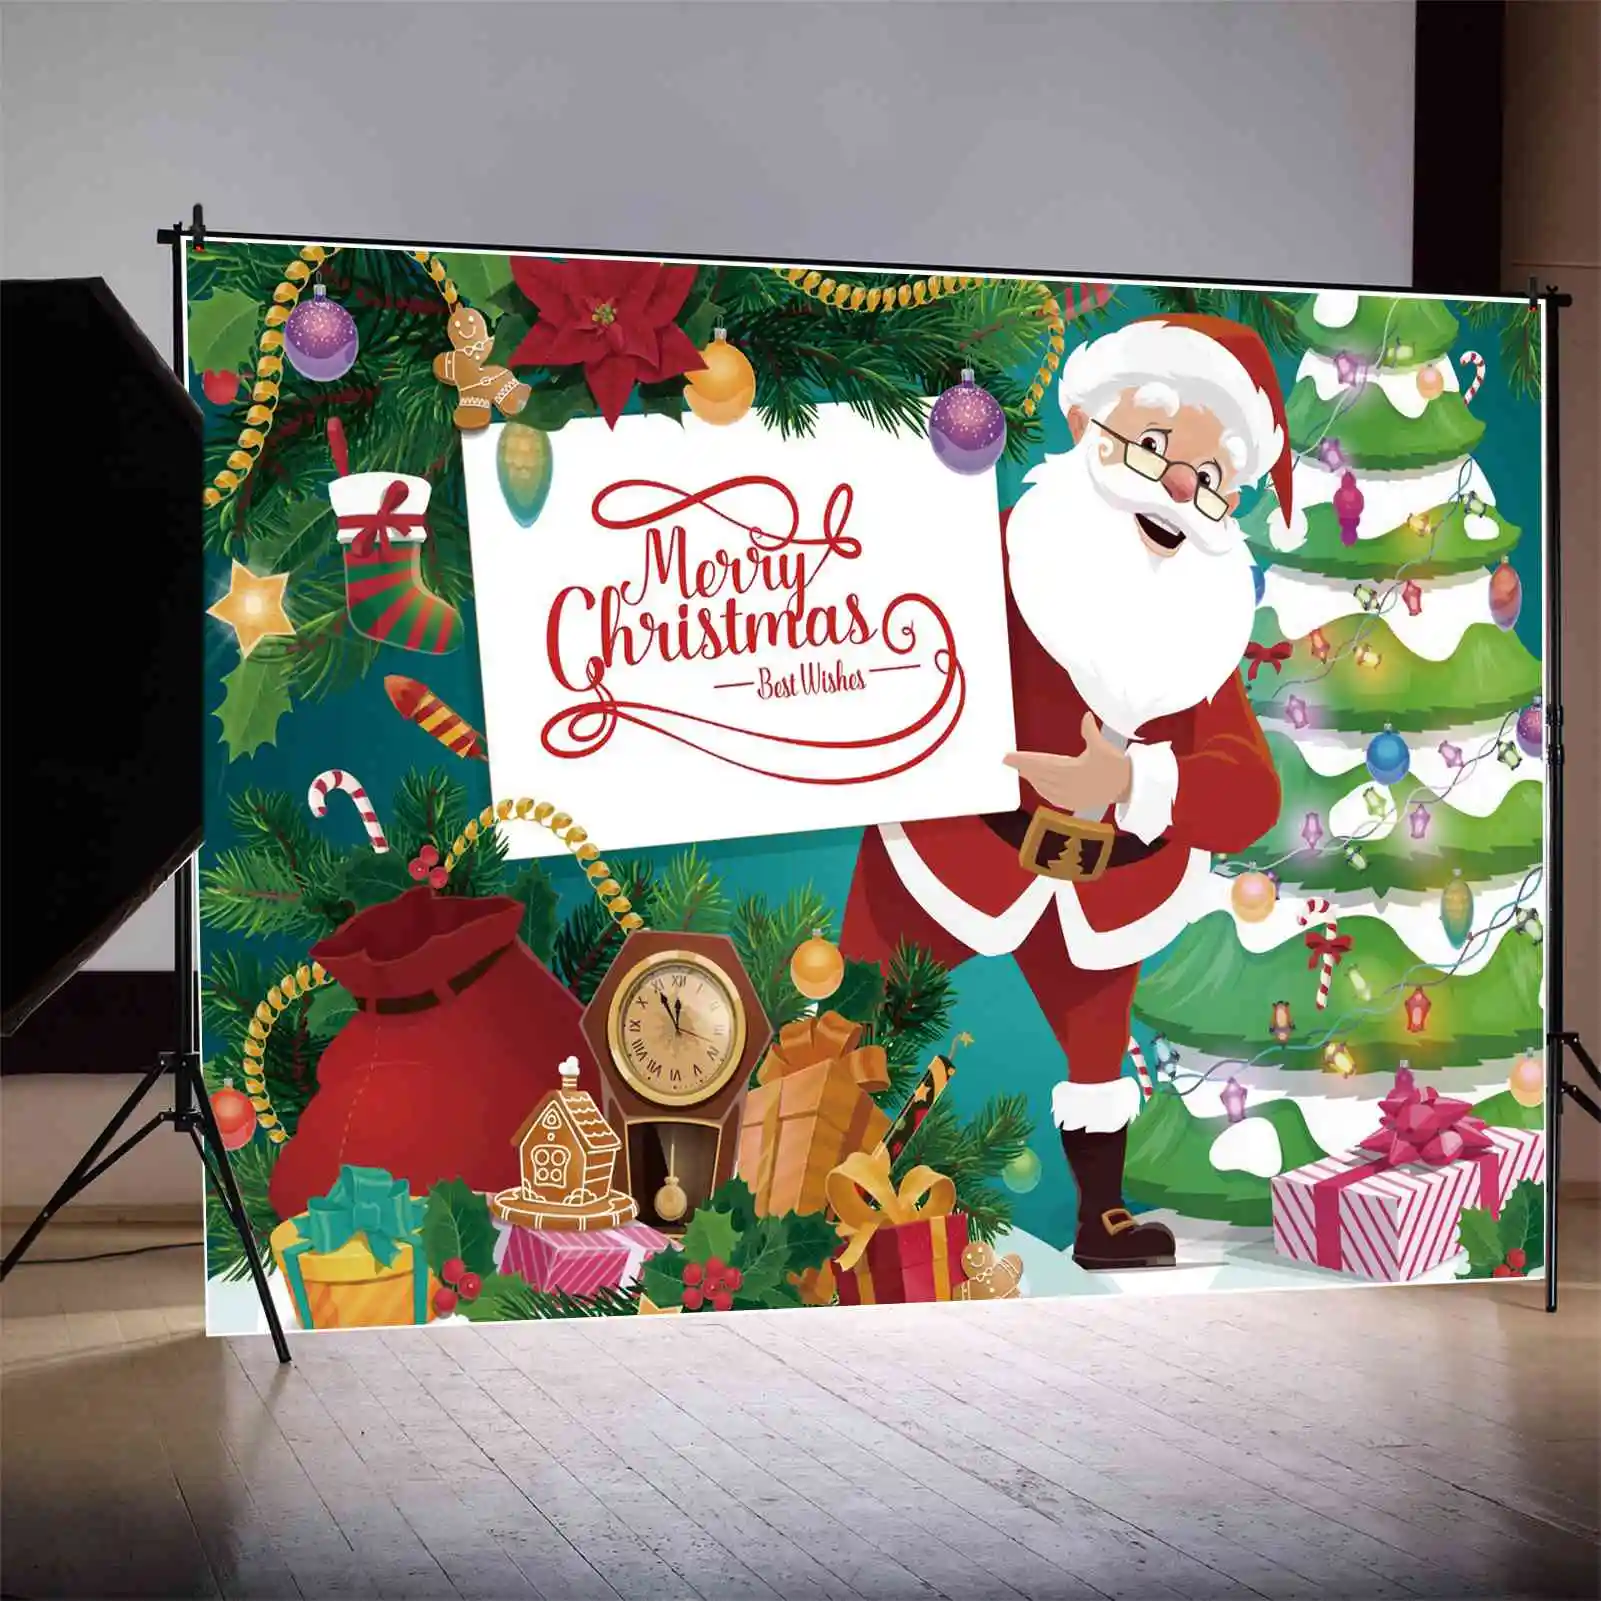 

Задний фон MOON.QG с надписью "Merry Christmas", "подарок отцу", "Детский Фотофон с баннером, дедом мороза, огнями, деревьями", декоративная фотобудка